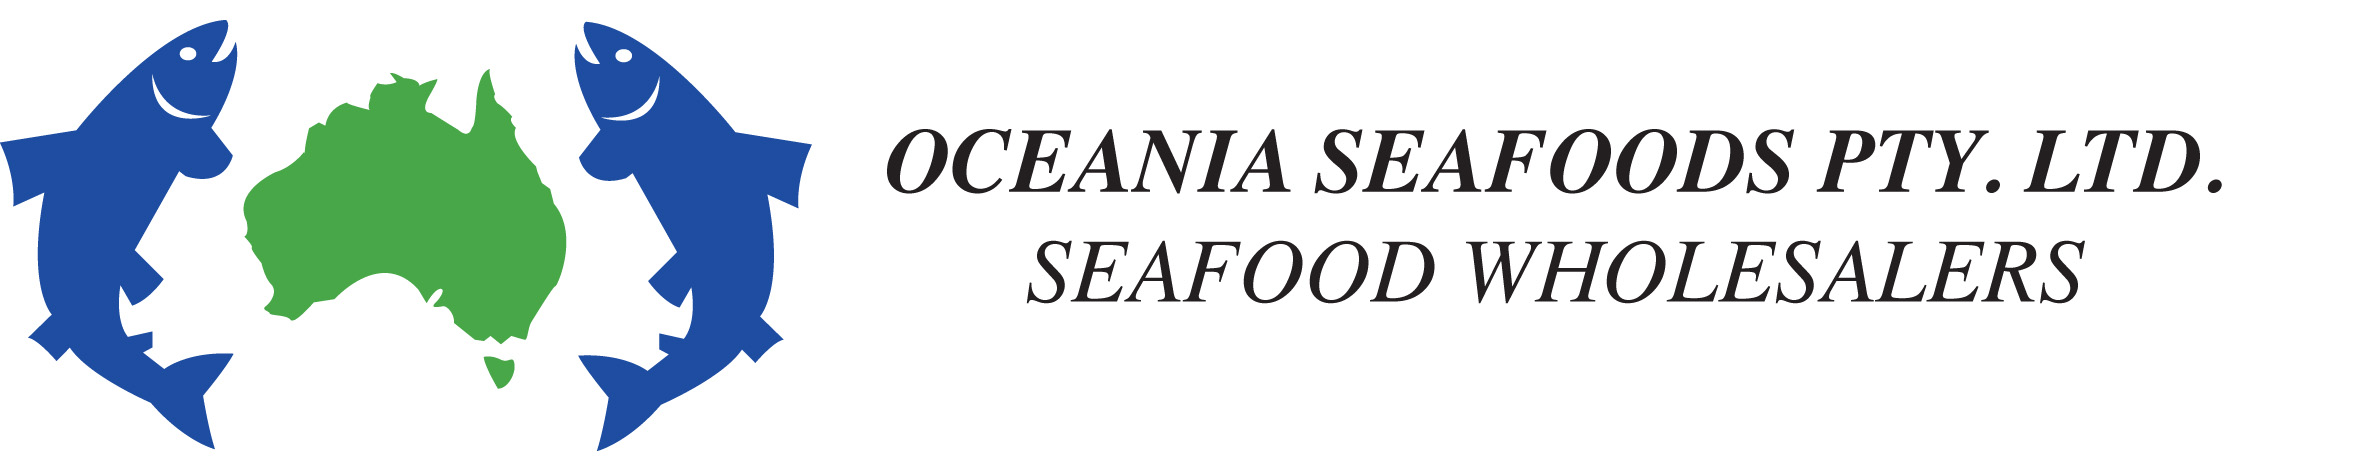 oceania seafood